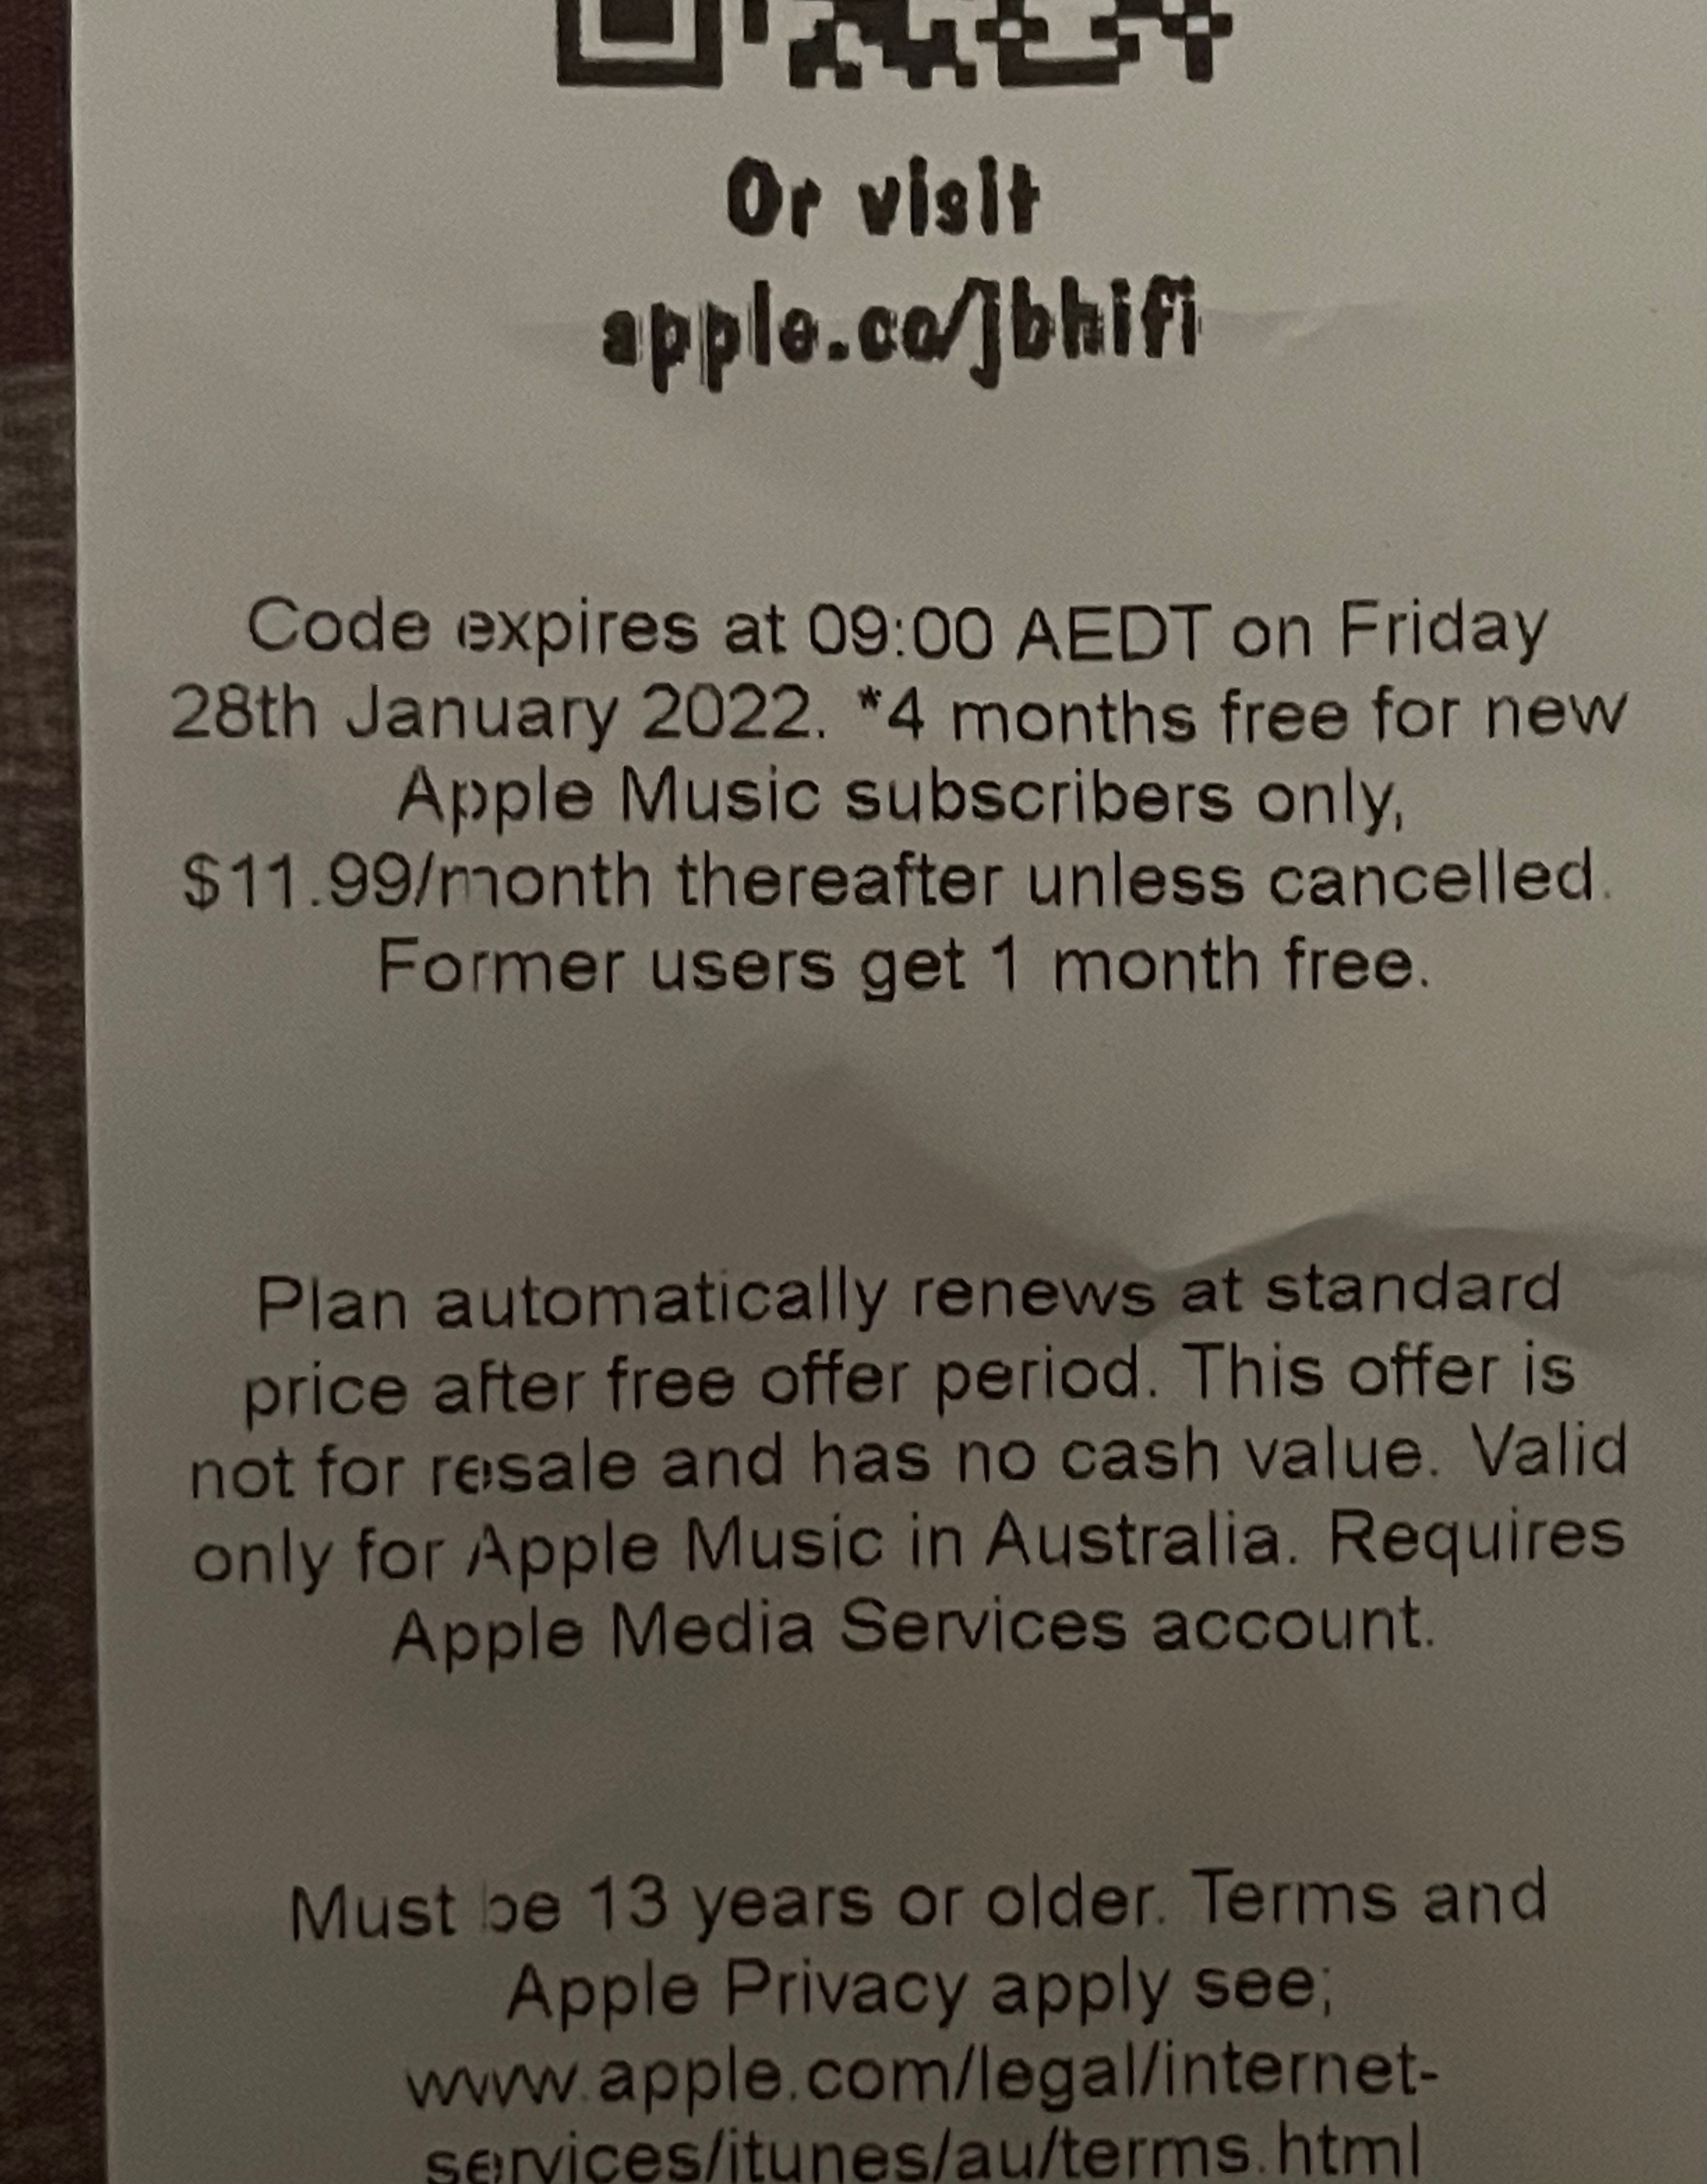 apple music redemption code